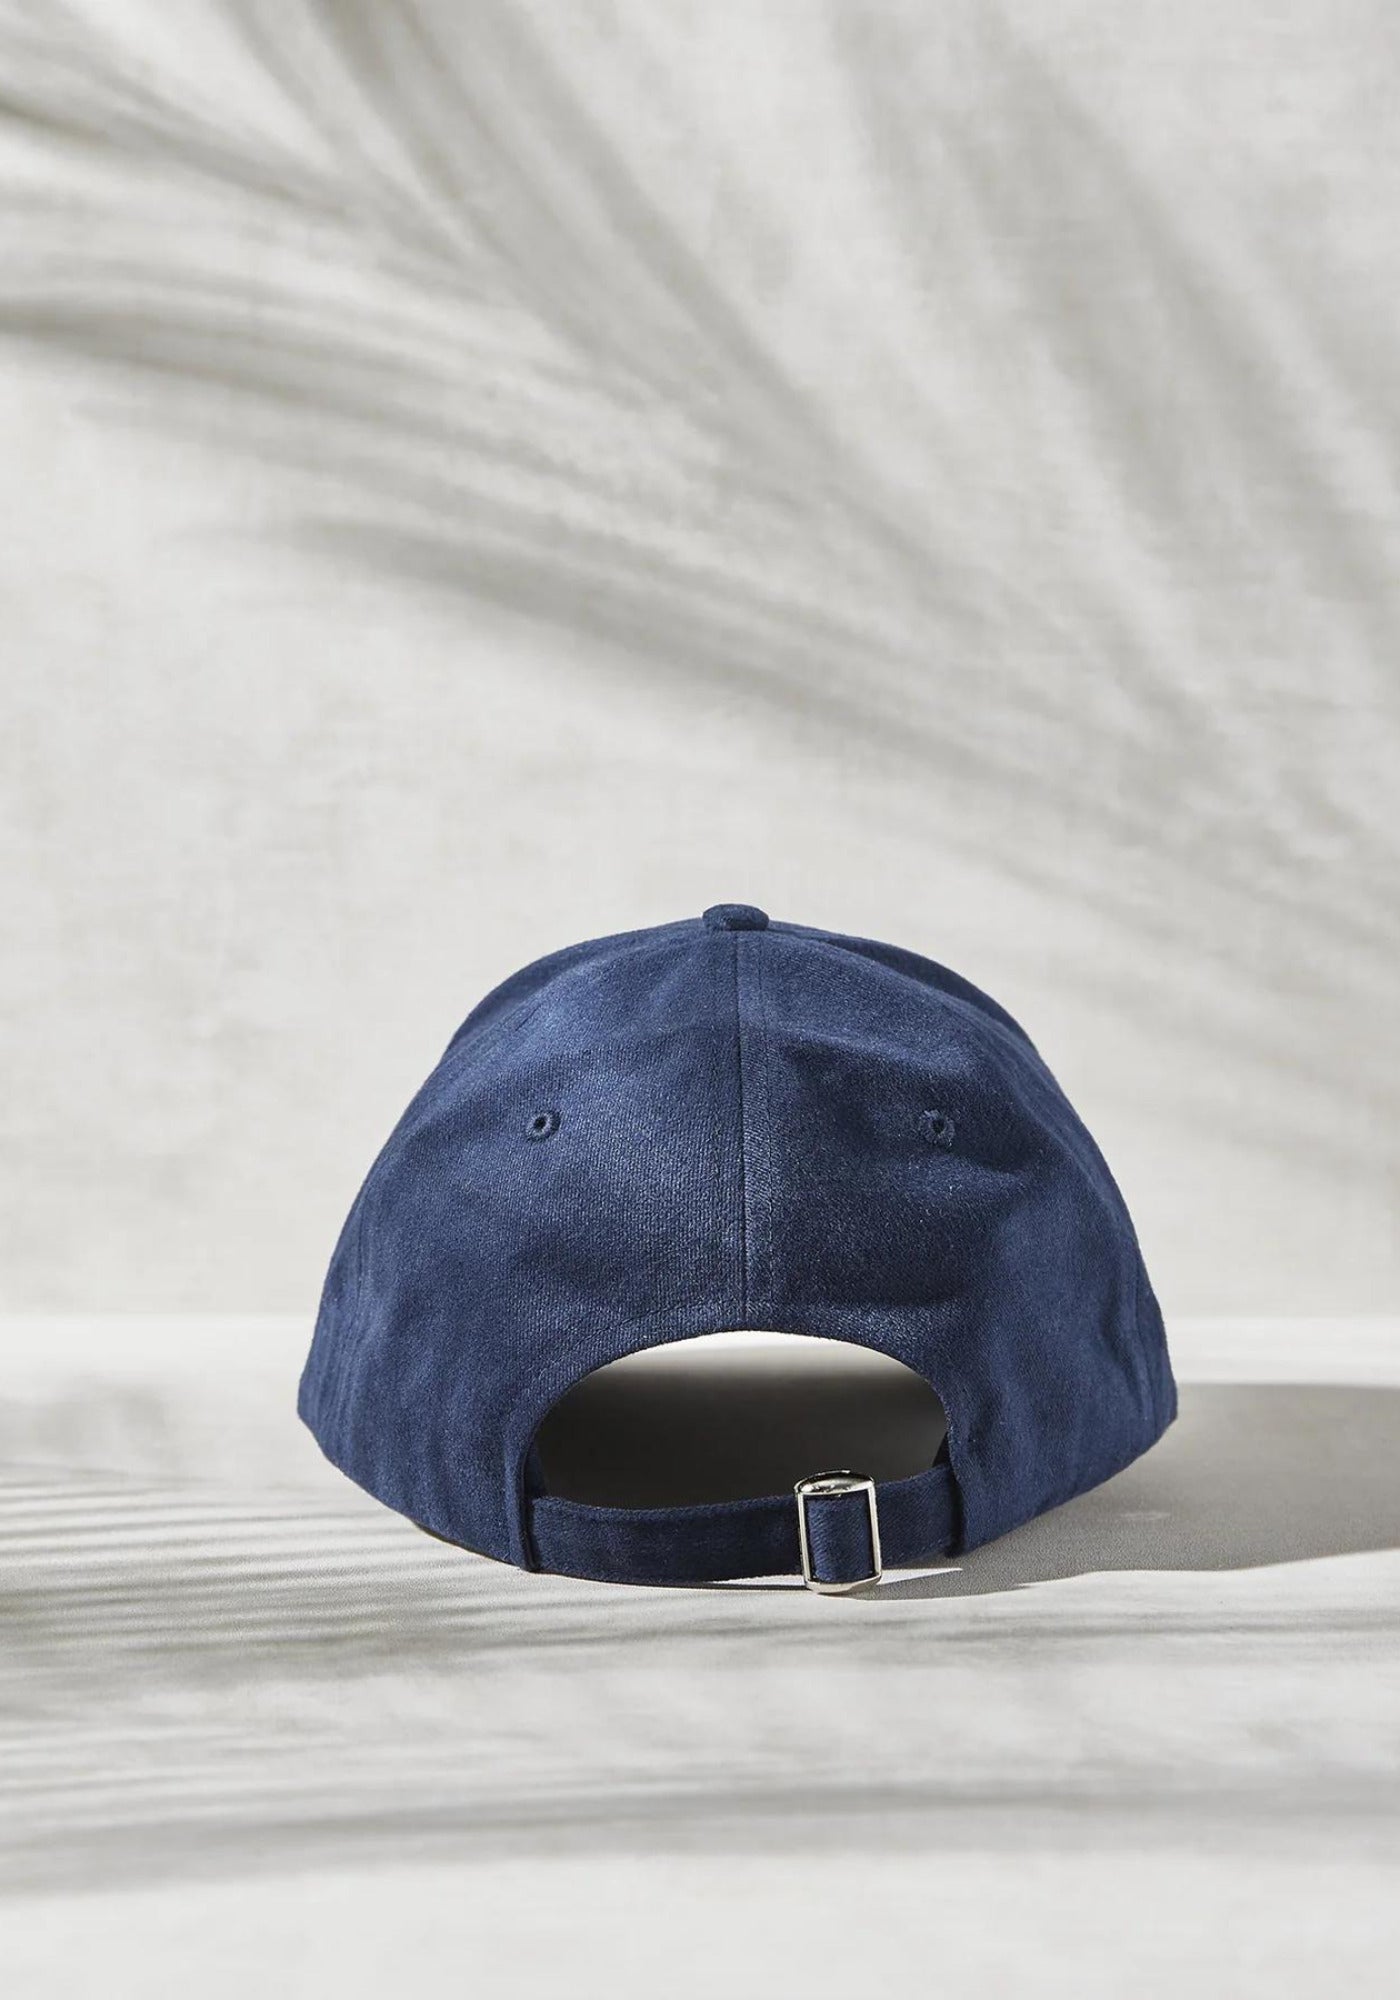 Le dos de la casquette mixte brodée L'élégant Bleu Marine de chez Marion Paris